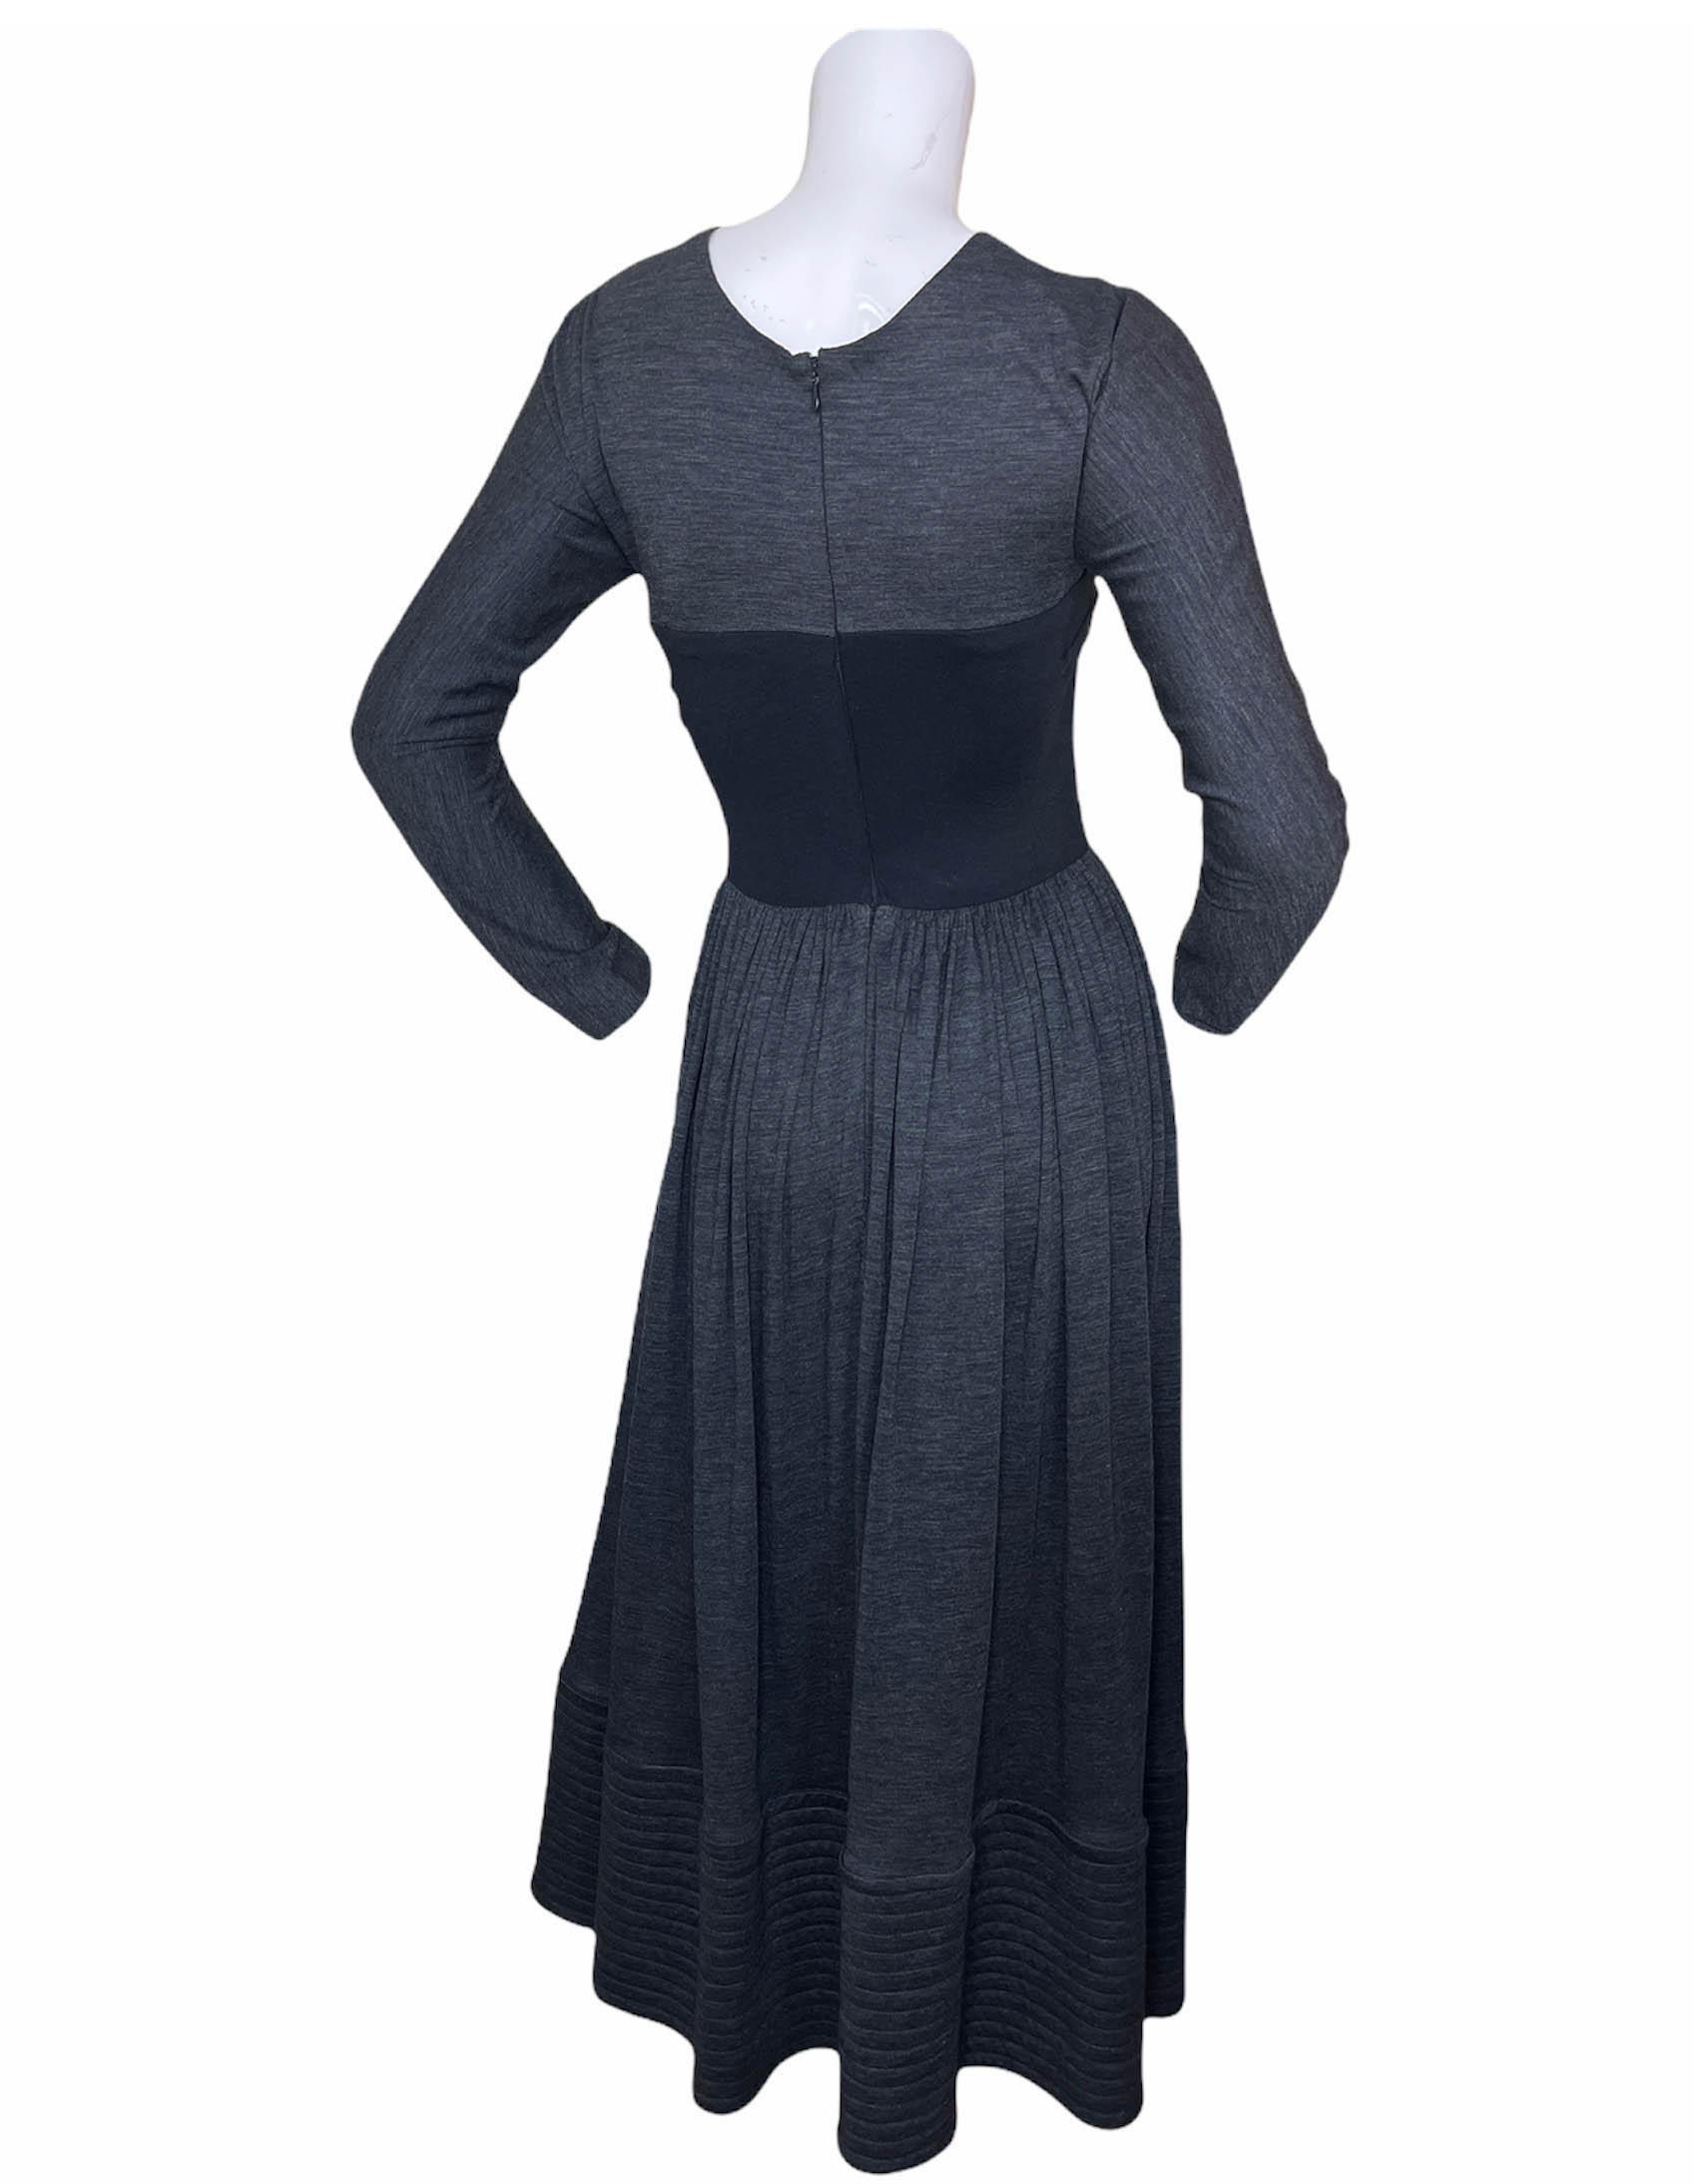 Geoffrey Beene Grey Longsleeve Jersey Dress w/ Black Bodice sz S For Sale 3